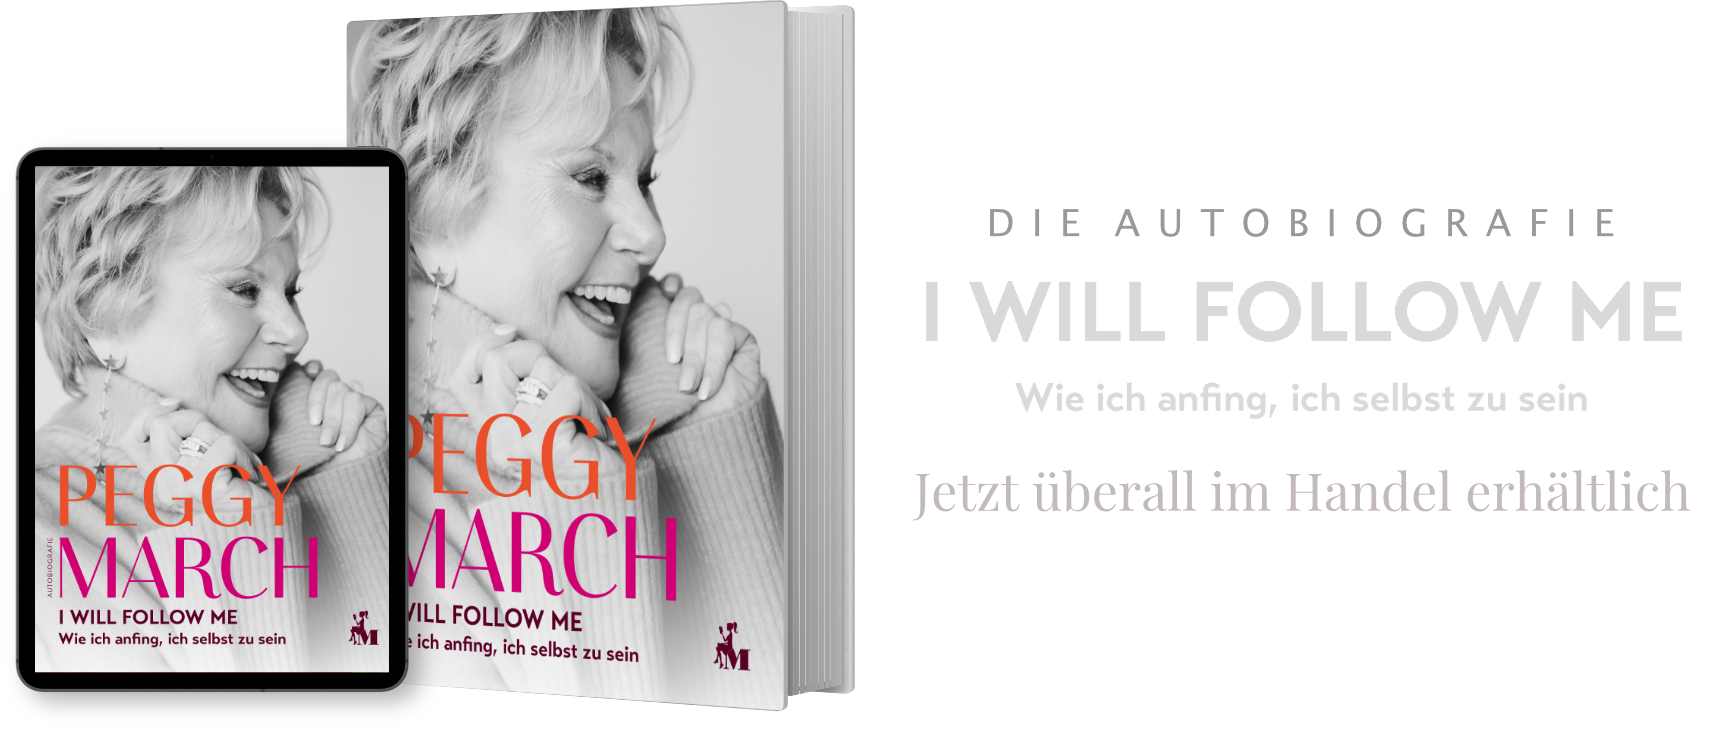 Peggy March - Die Autobiografie